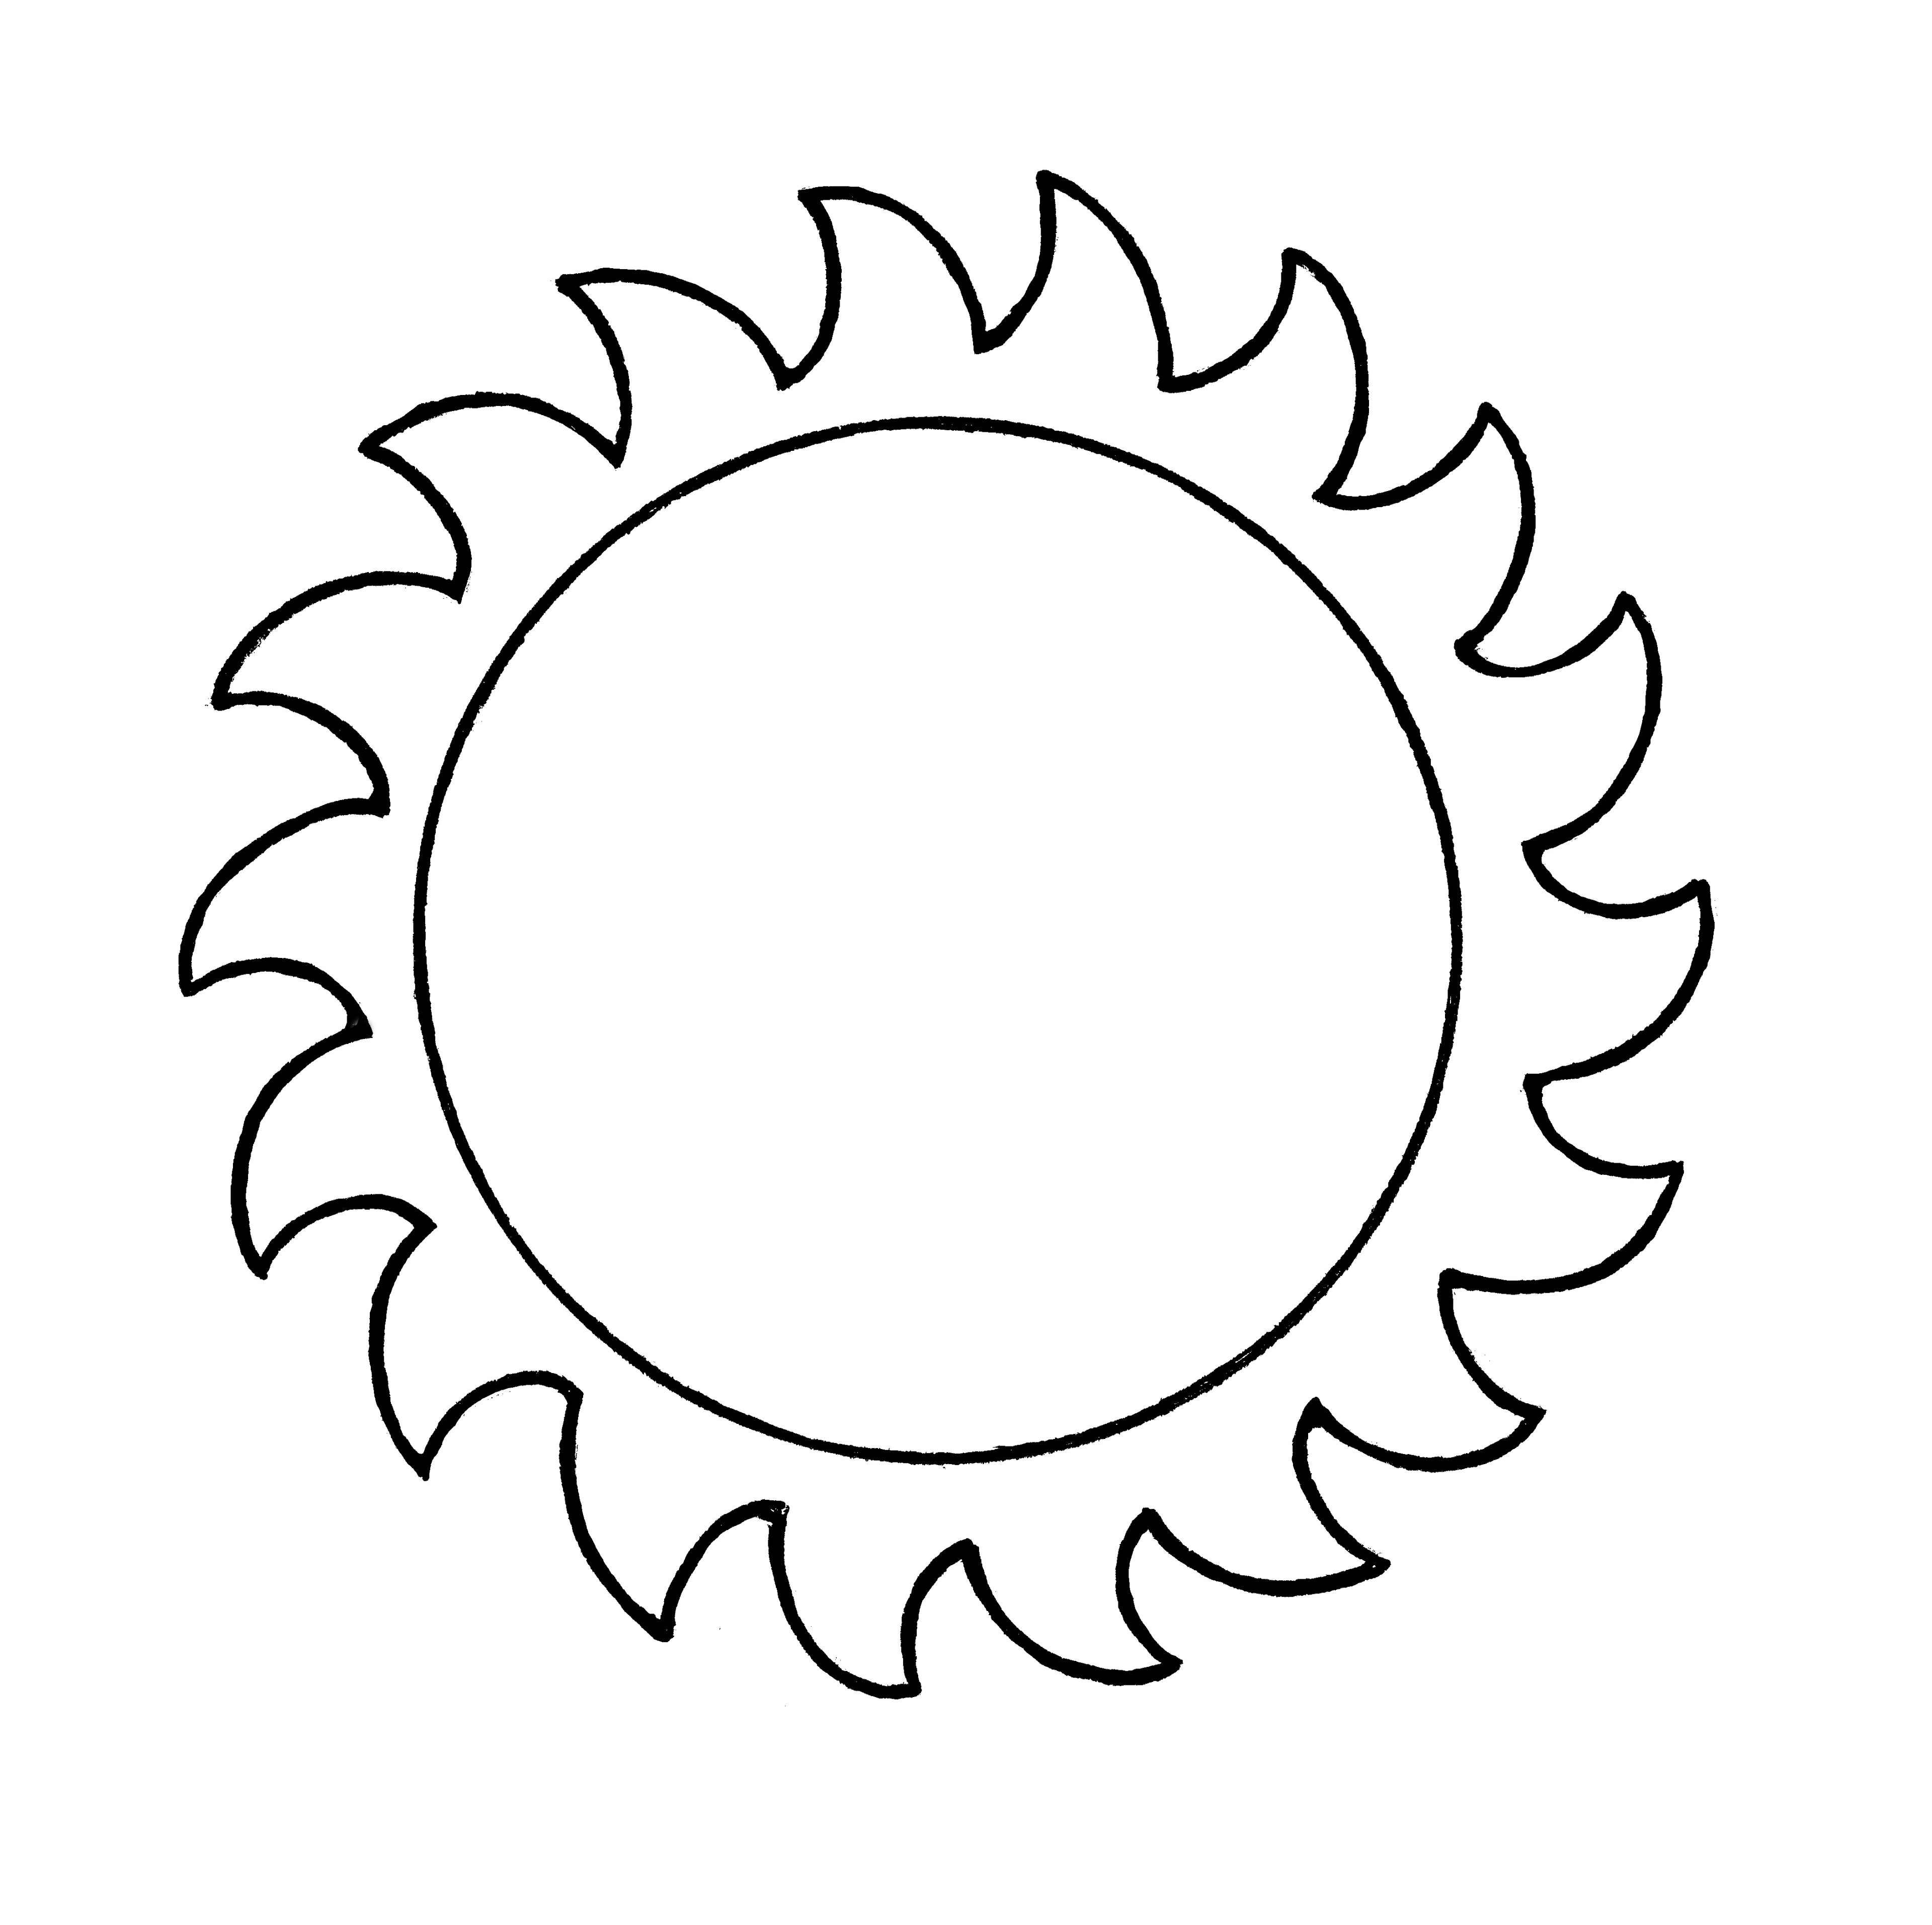 sun drawings art